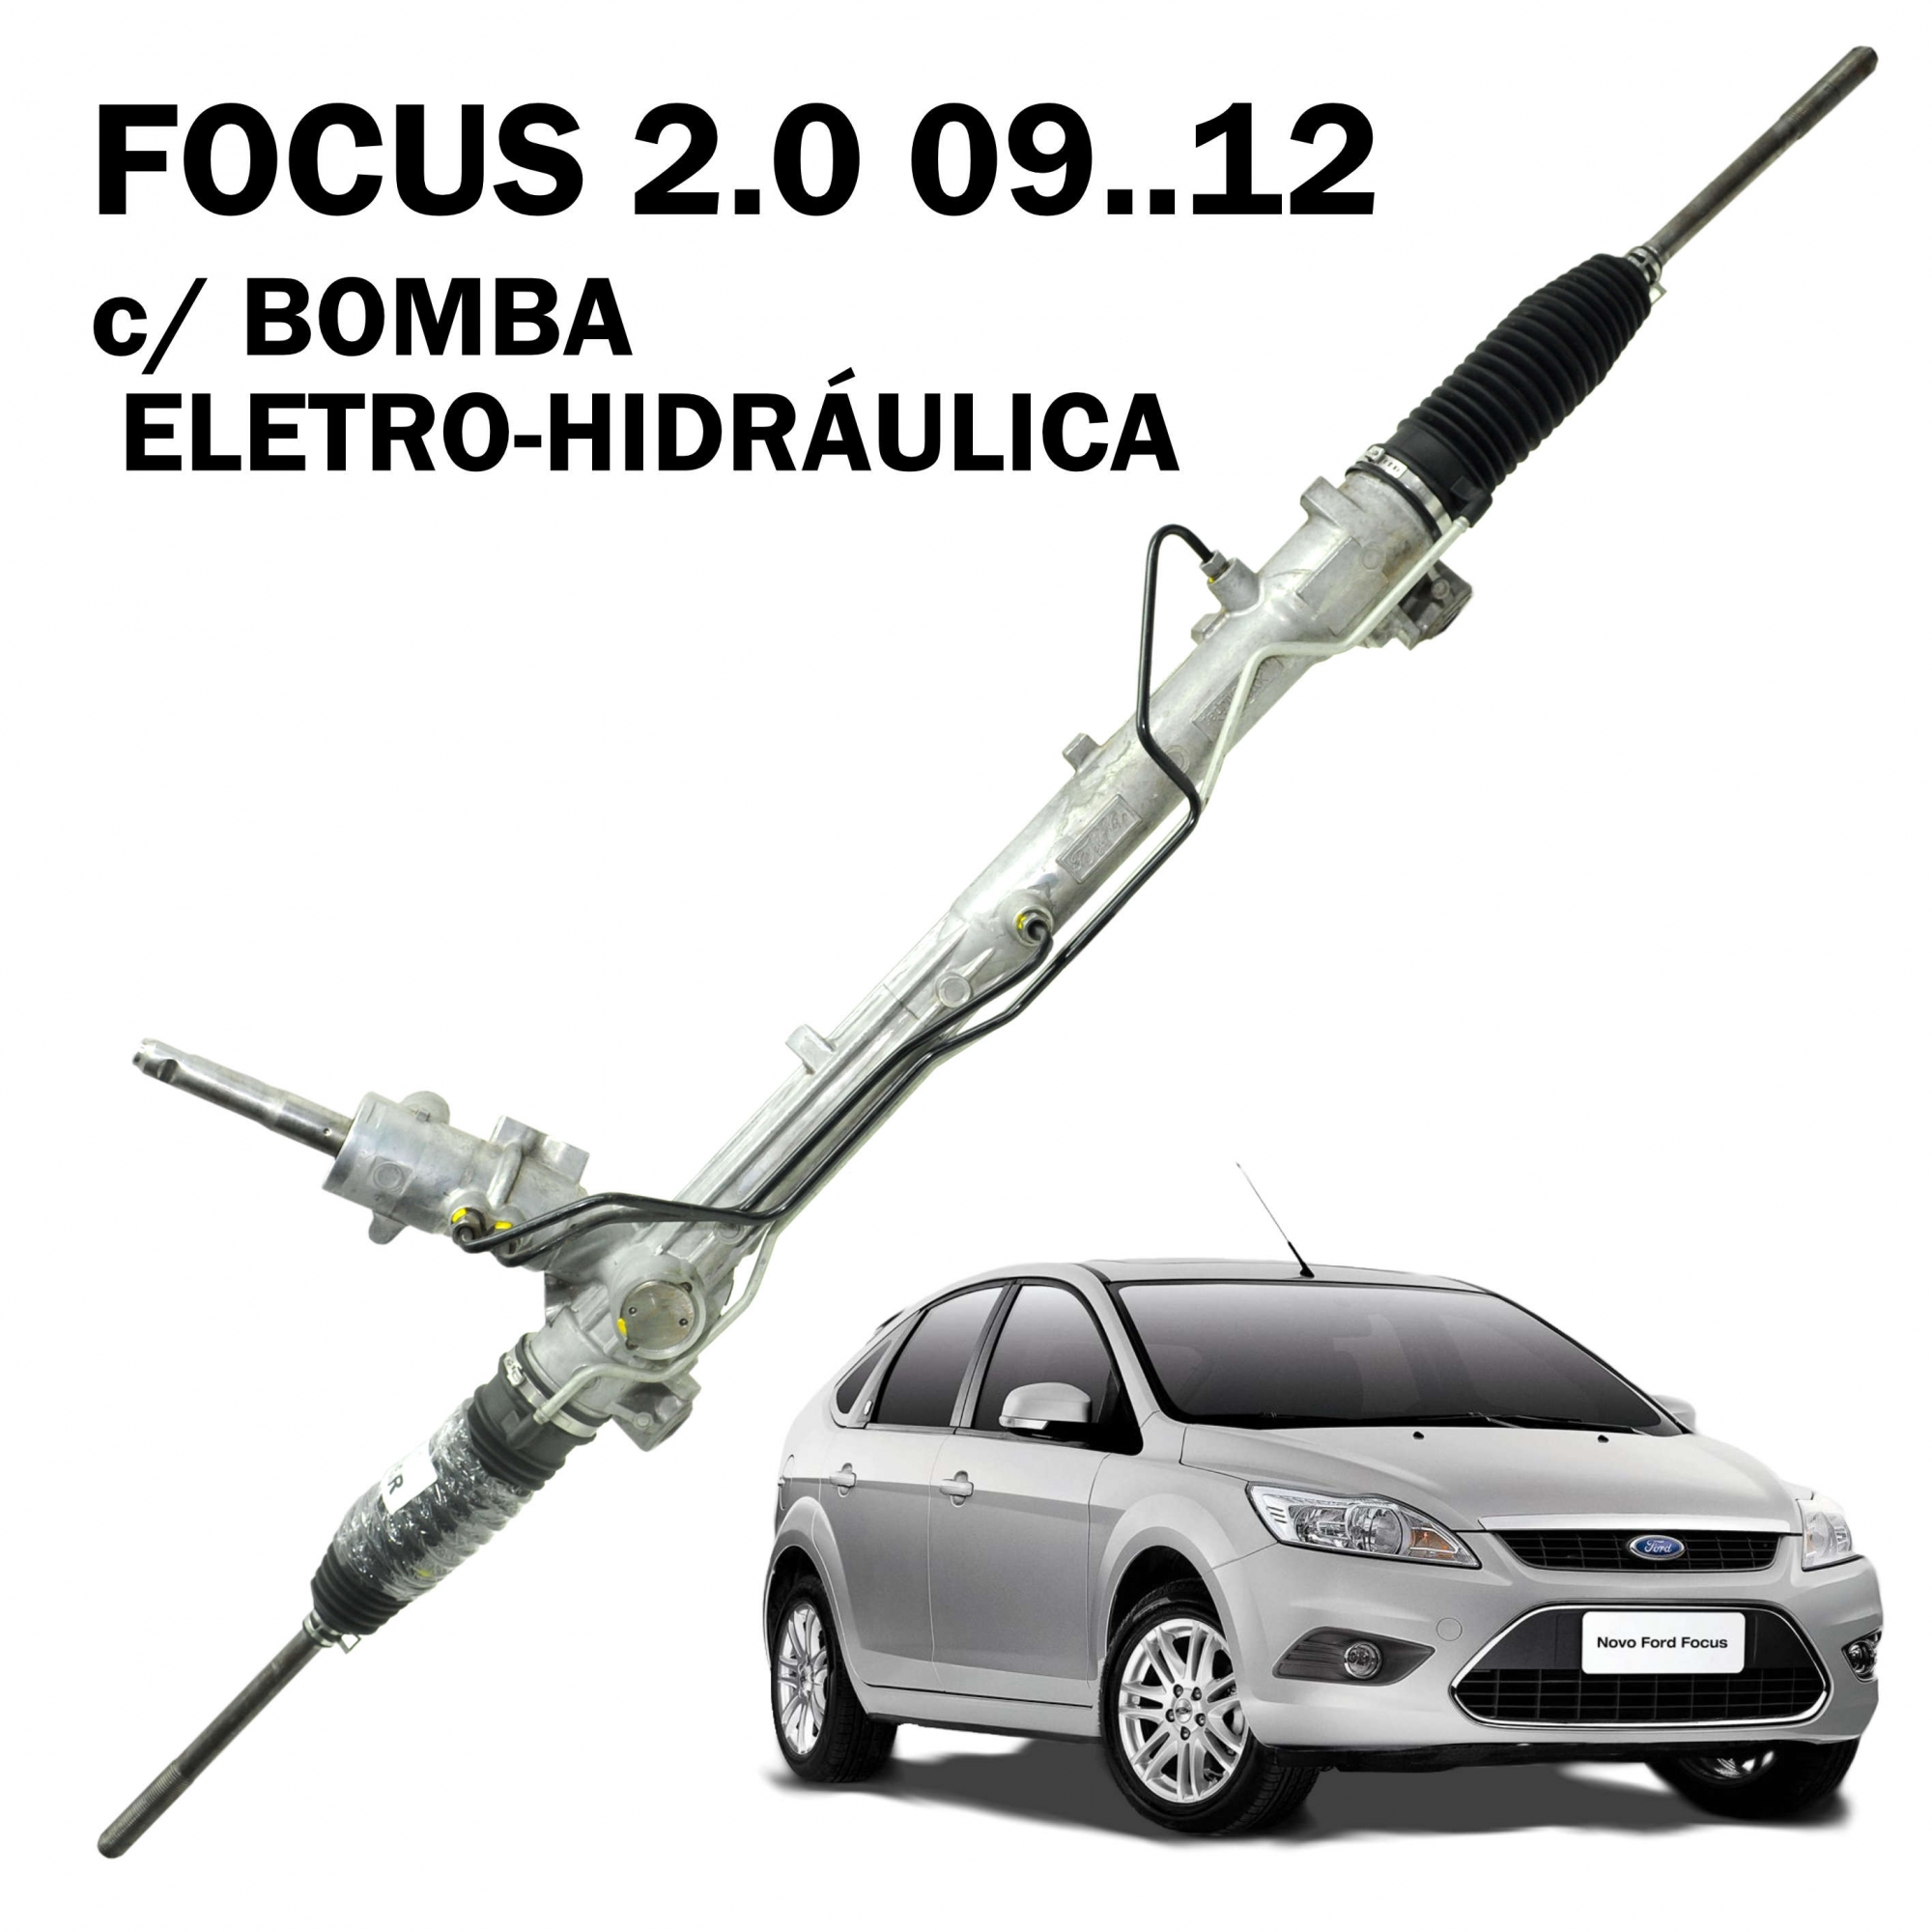 Caixa Direção Hidráulica Ford Focus 2.0 09...12 c/ Bomba Eletro-Hidraulica